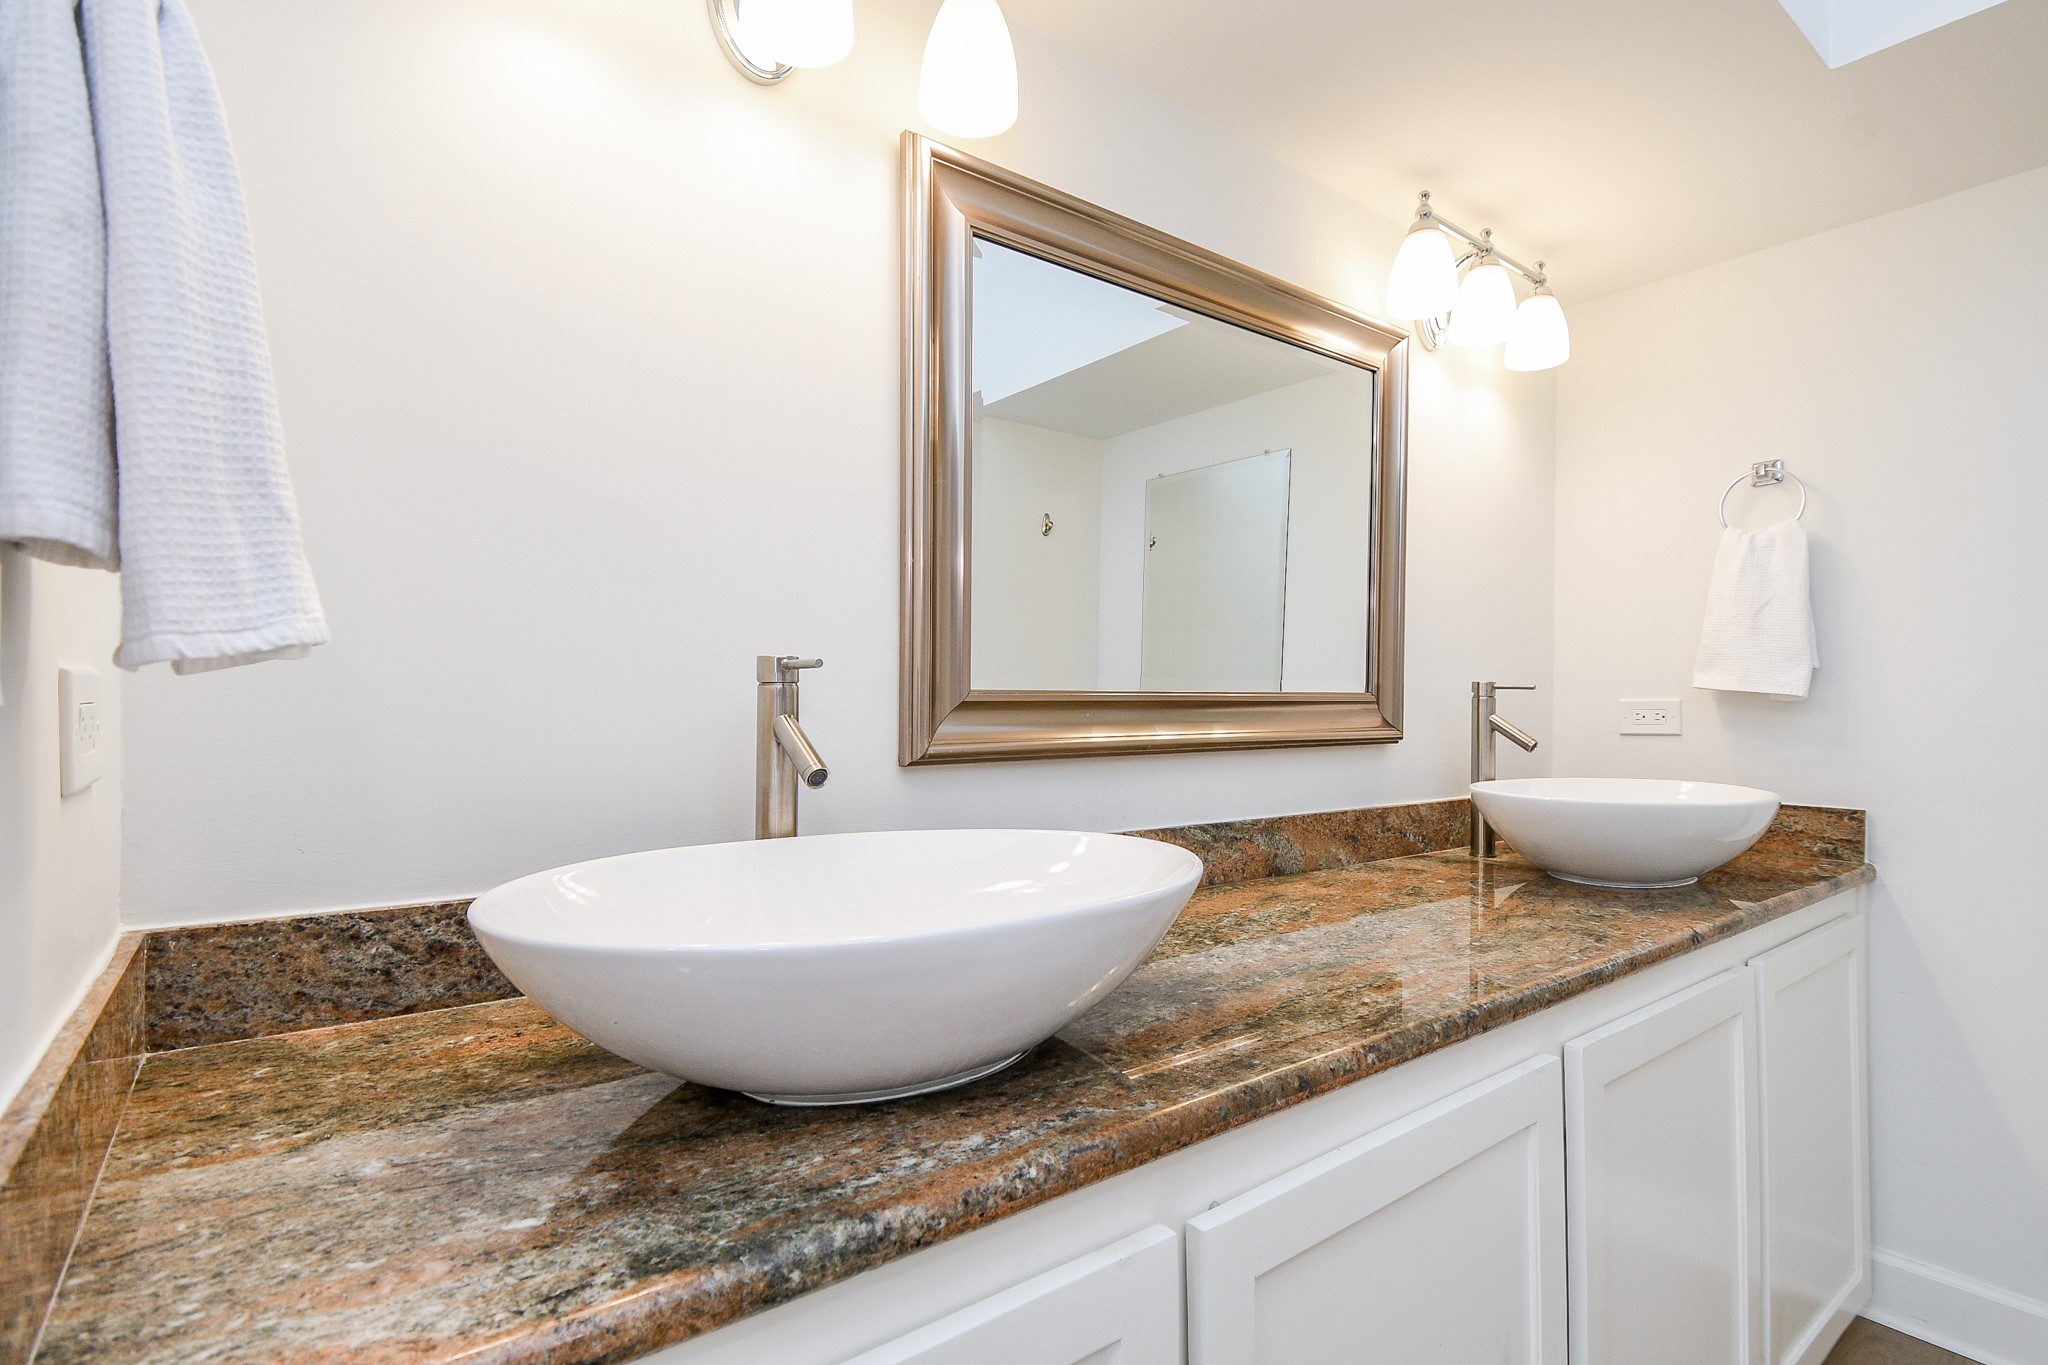 The ensuite bathroom features elegant granite counters